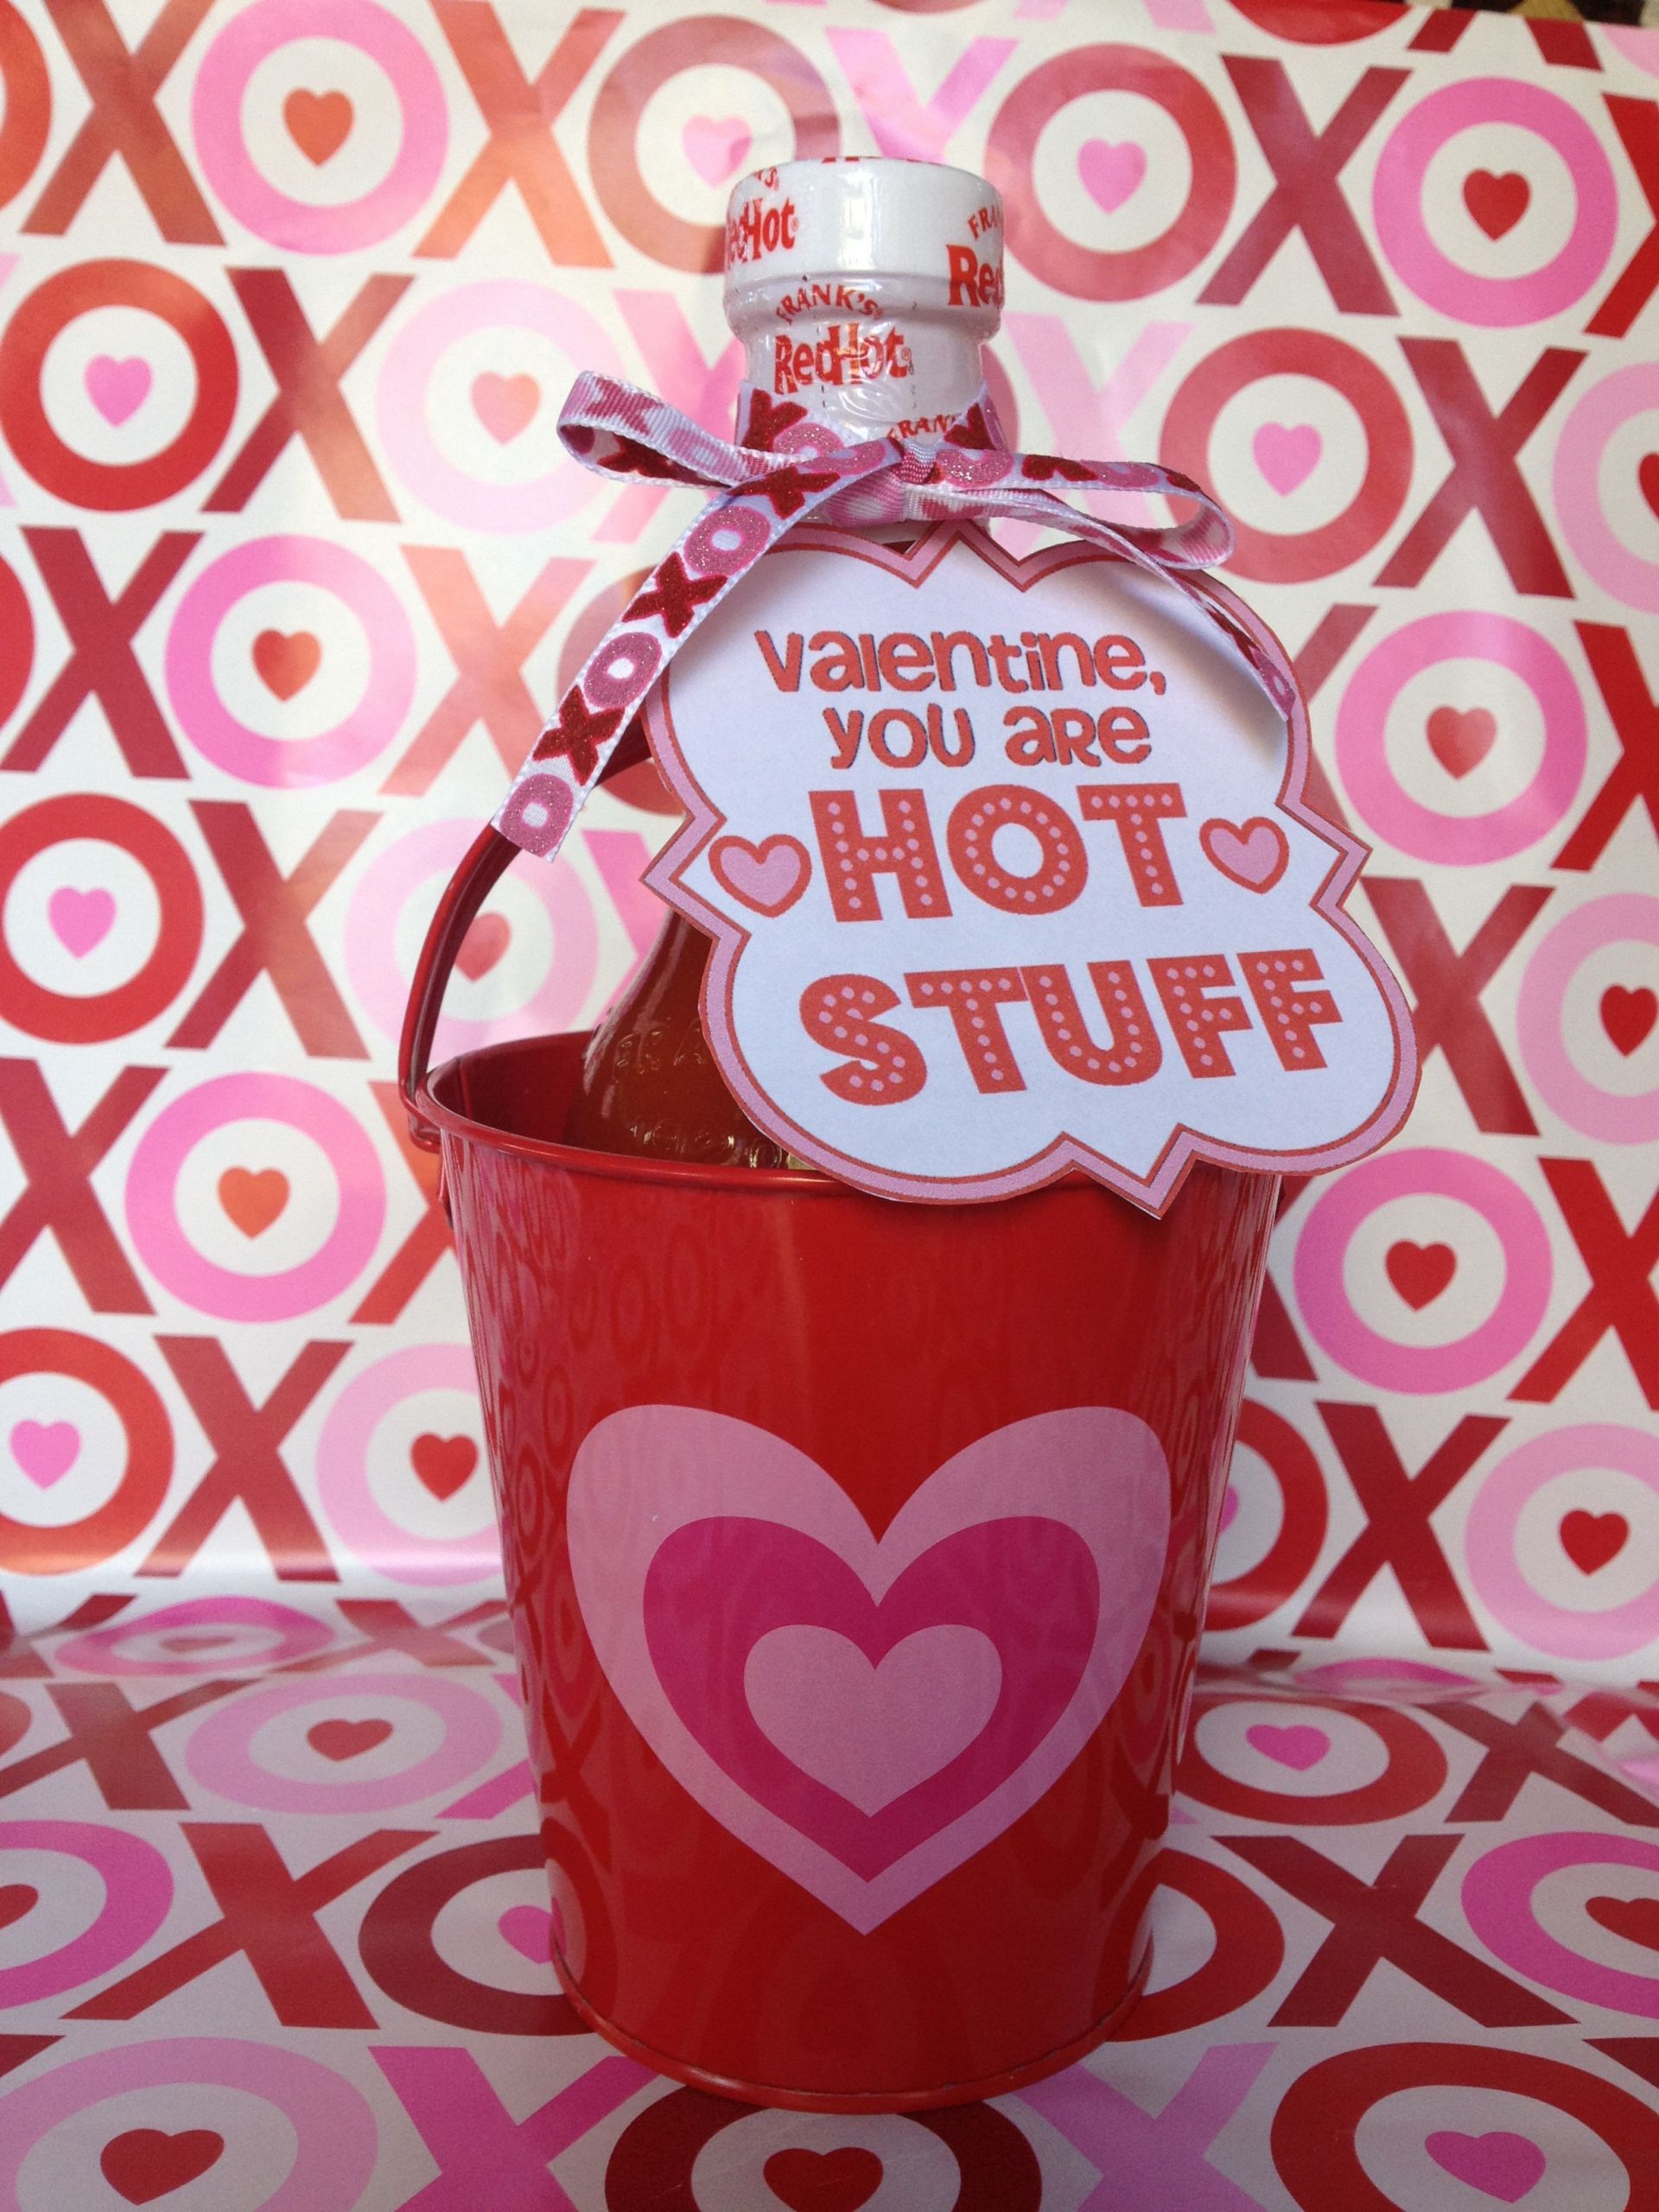 Sexy Valentines Day Gift Ideas
 hot sauce valentine